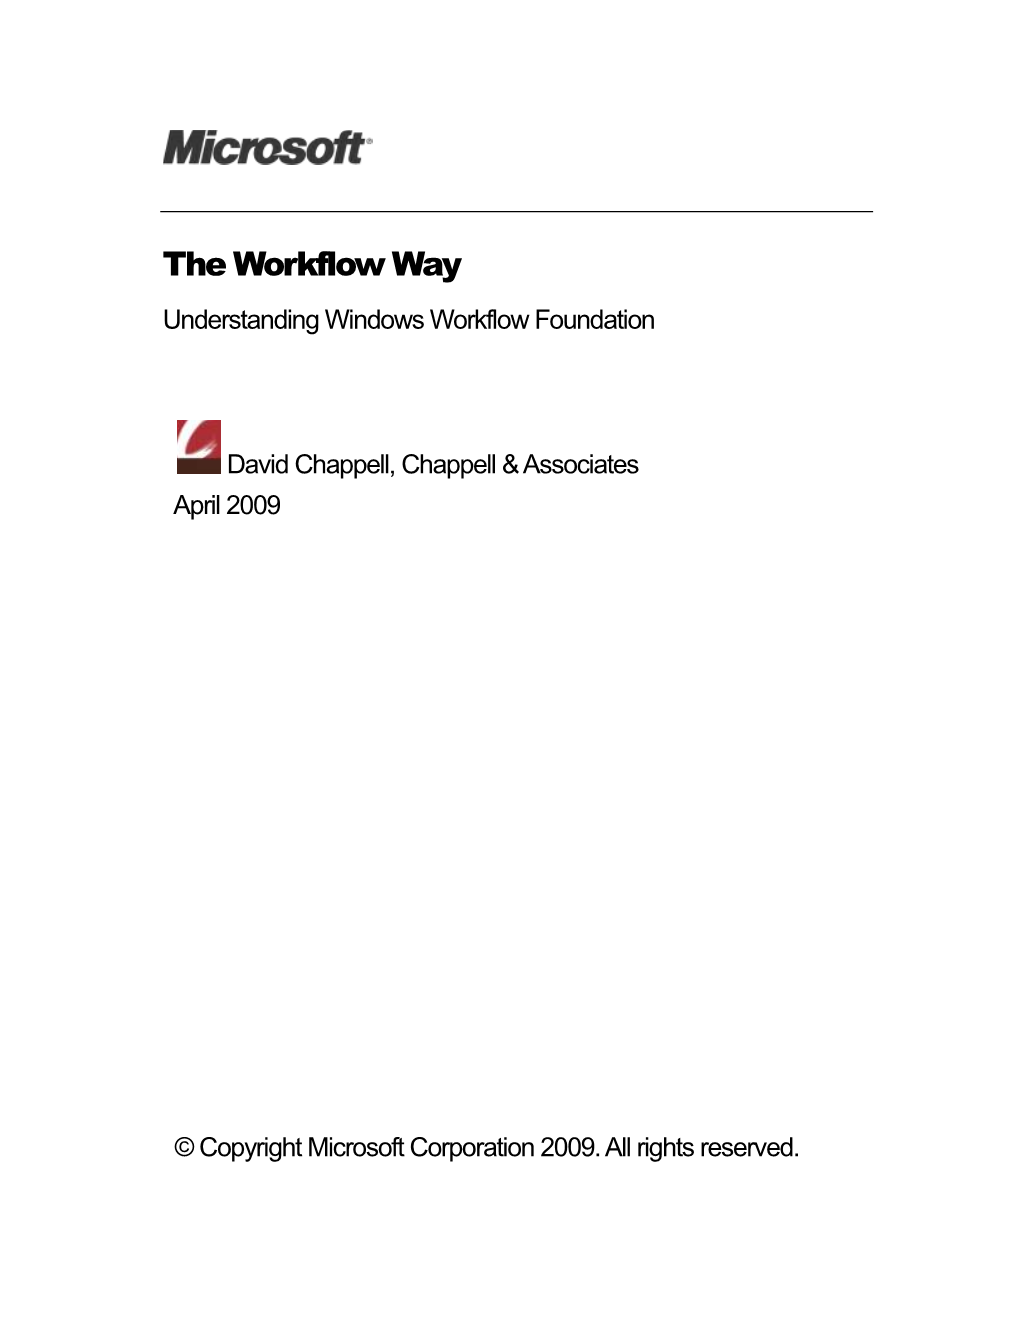 The Workflow Way: Understanding Windows Workflow Foundation